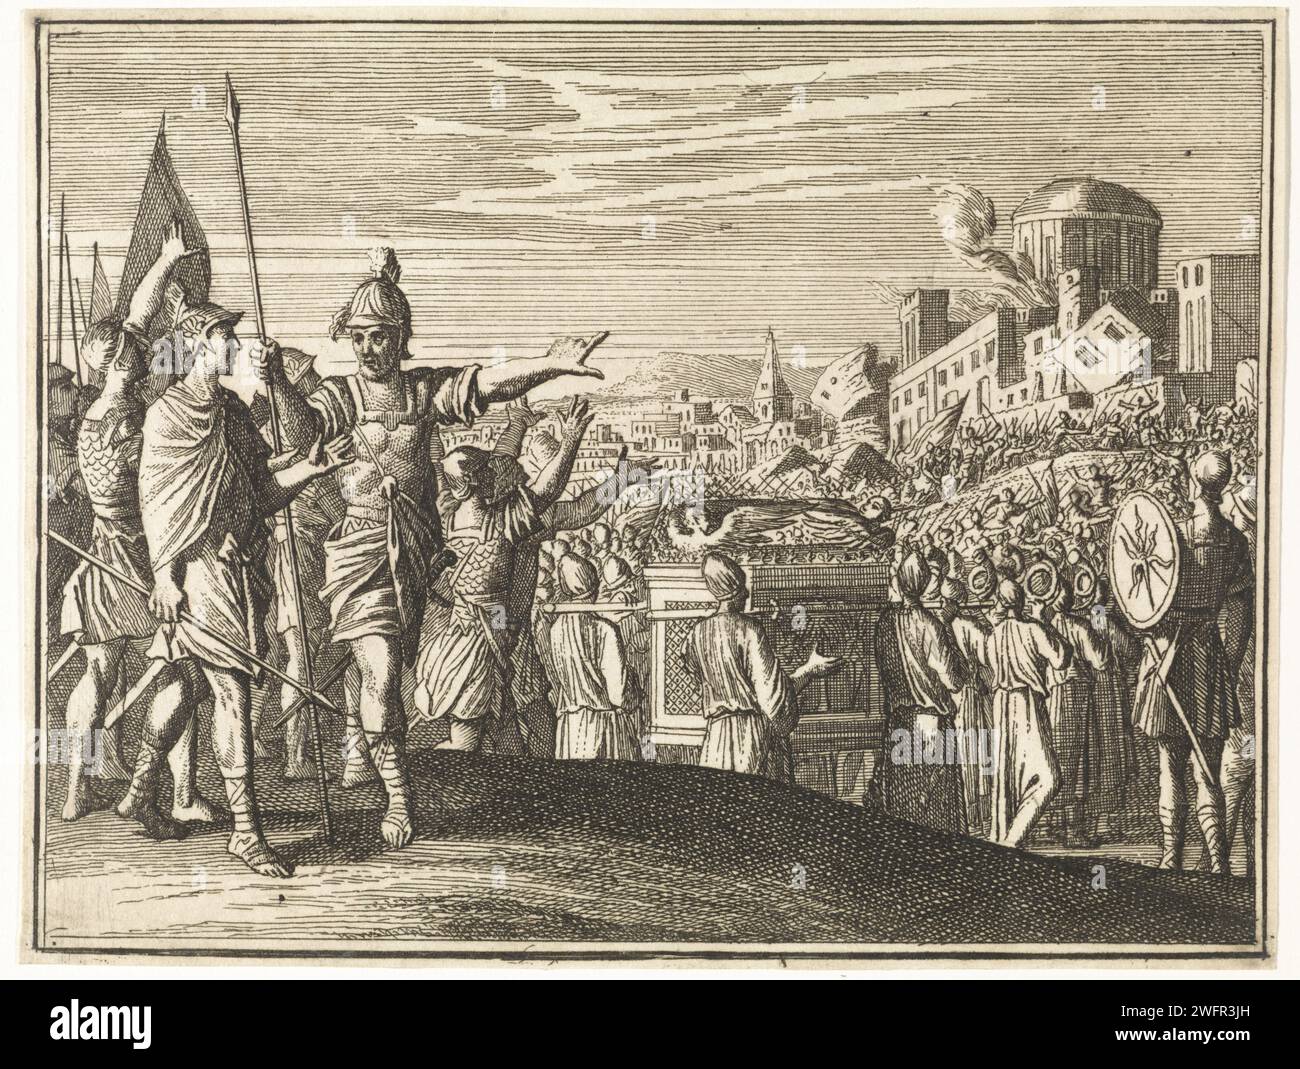 Fall von Jericho, Caspar Luyken, 1712 Druck Amsterdamer Papier, das die Israeliten um Jericho herumschreiten: Bei der Prozession kommt der Hauptkörper der Soldaten zuerst, als nächstes sieben Priester, die auf Trompeten blasen, gefolgt von den Priestern, die die Arche und eine Hinterwache tragen Stockfoto